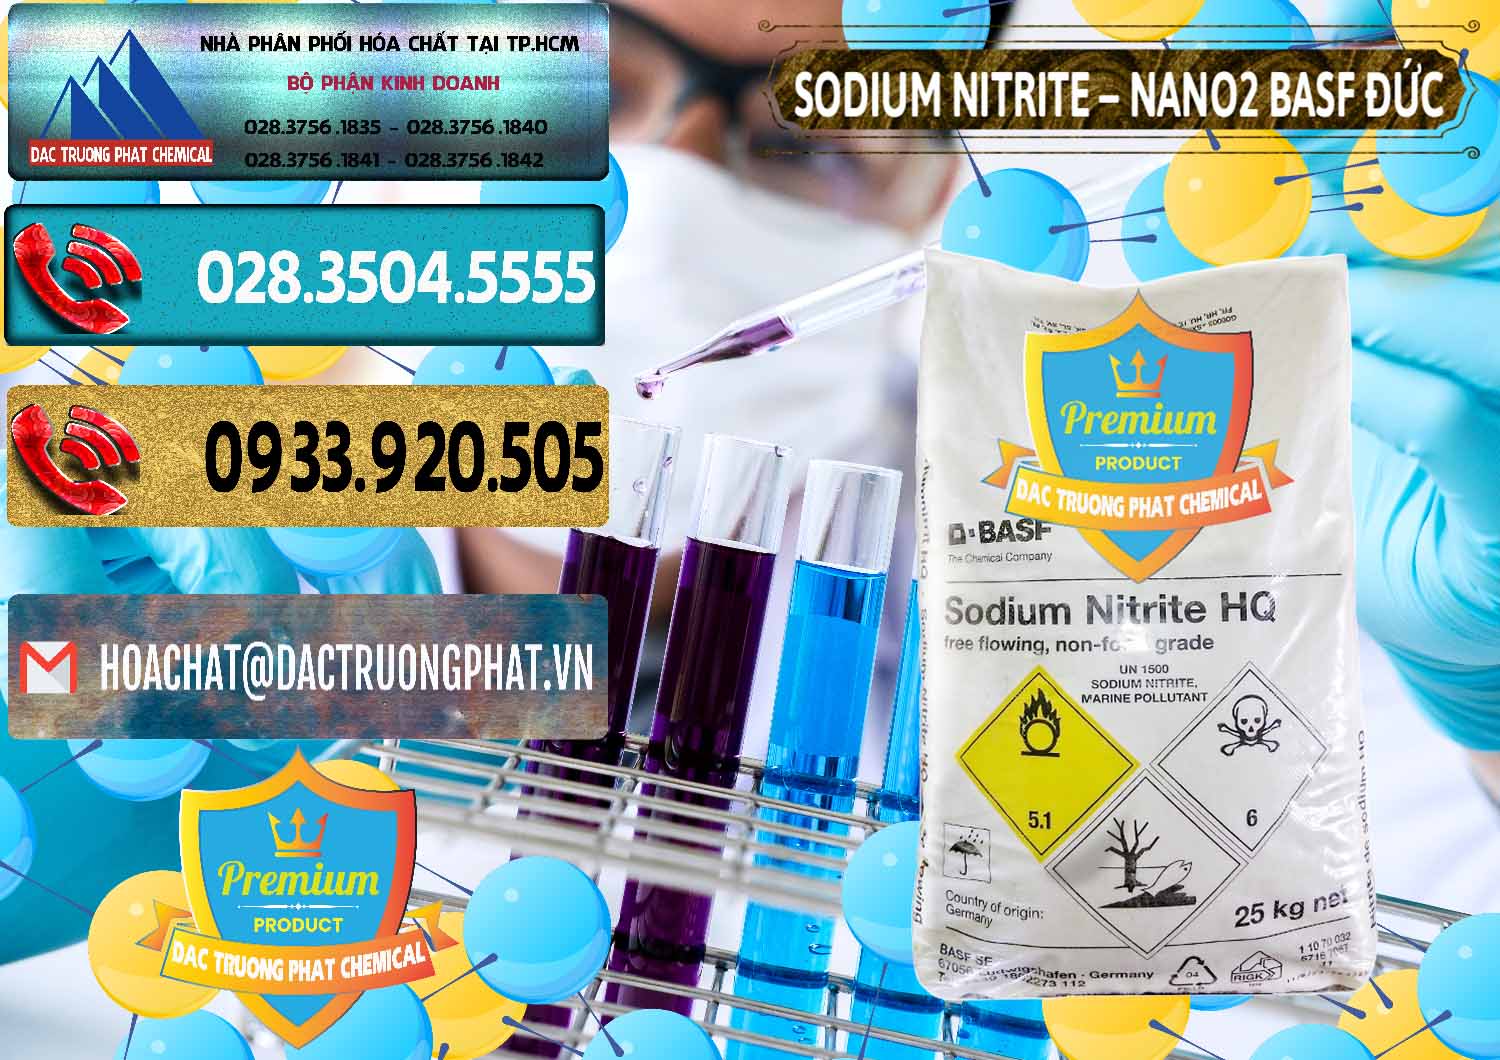 Nơi bán và cung cấp Sodium Nitrite - NANO2 Đức BASF Germany - 0148 - Cty chuyên cung cấp ( bán ) hóa chất tại TP.HCM - hoachatdetnhuom.com